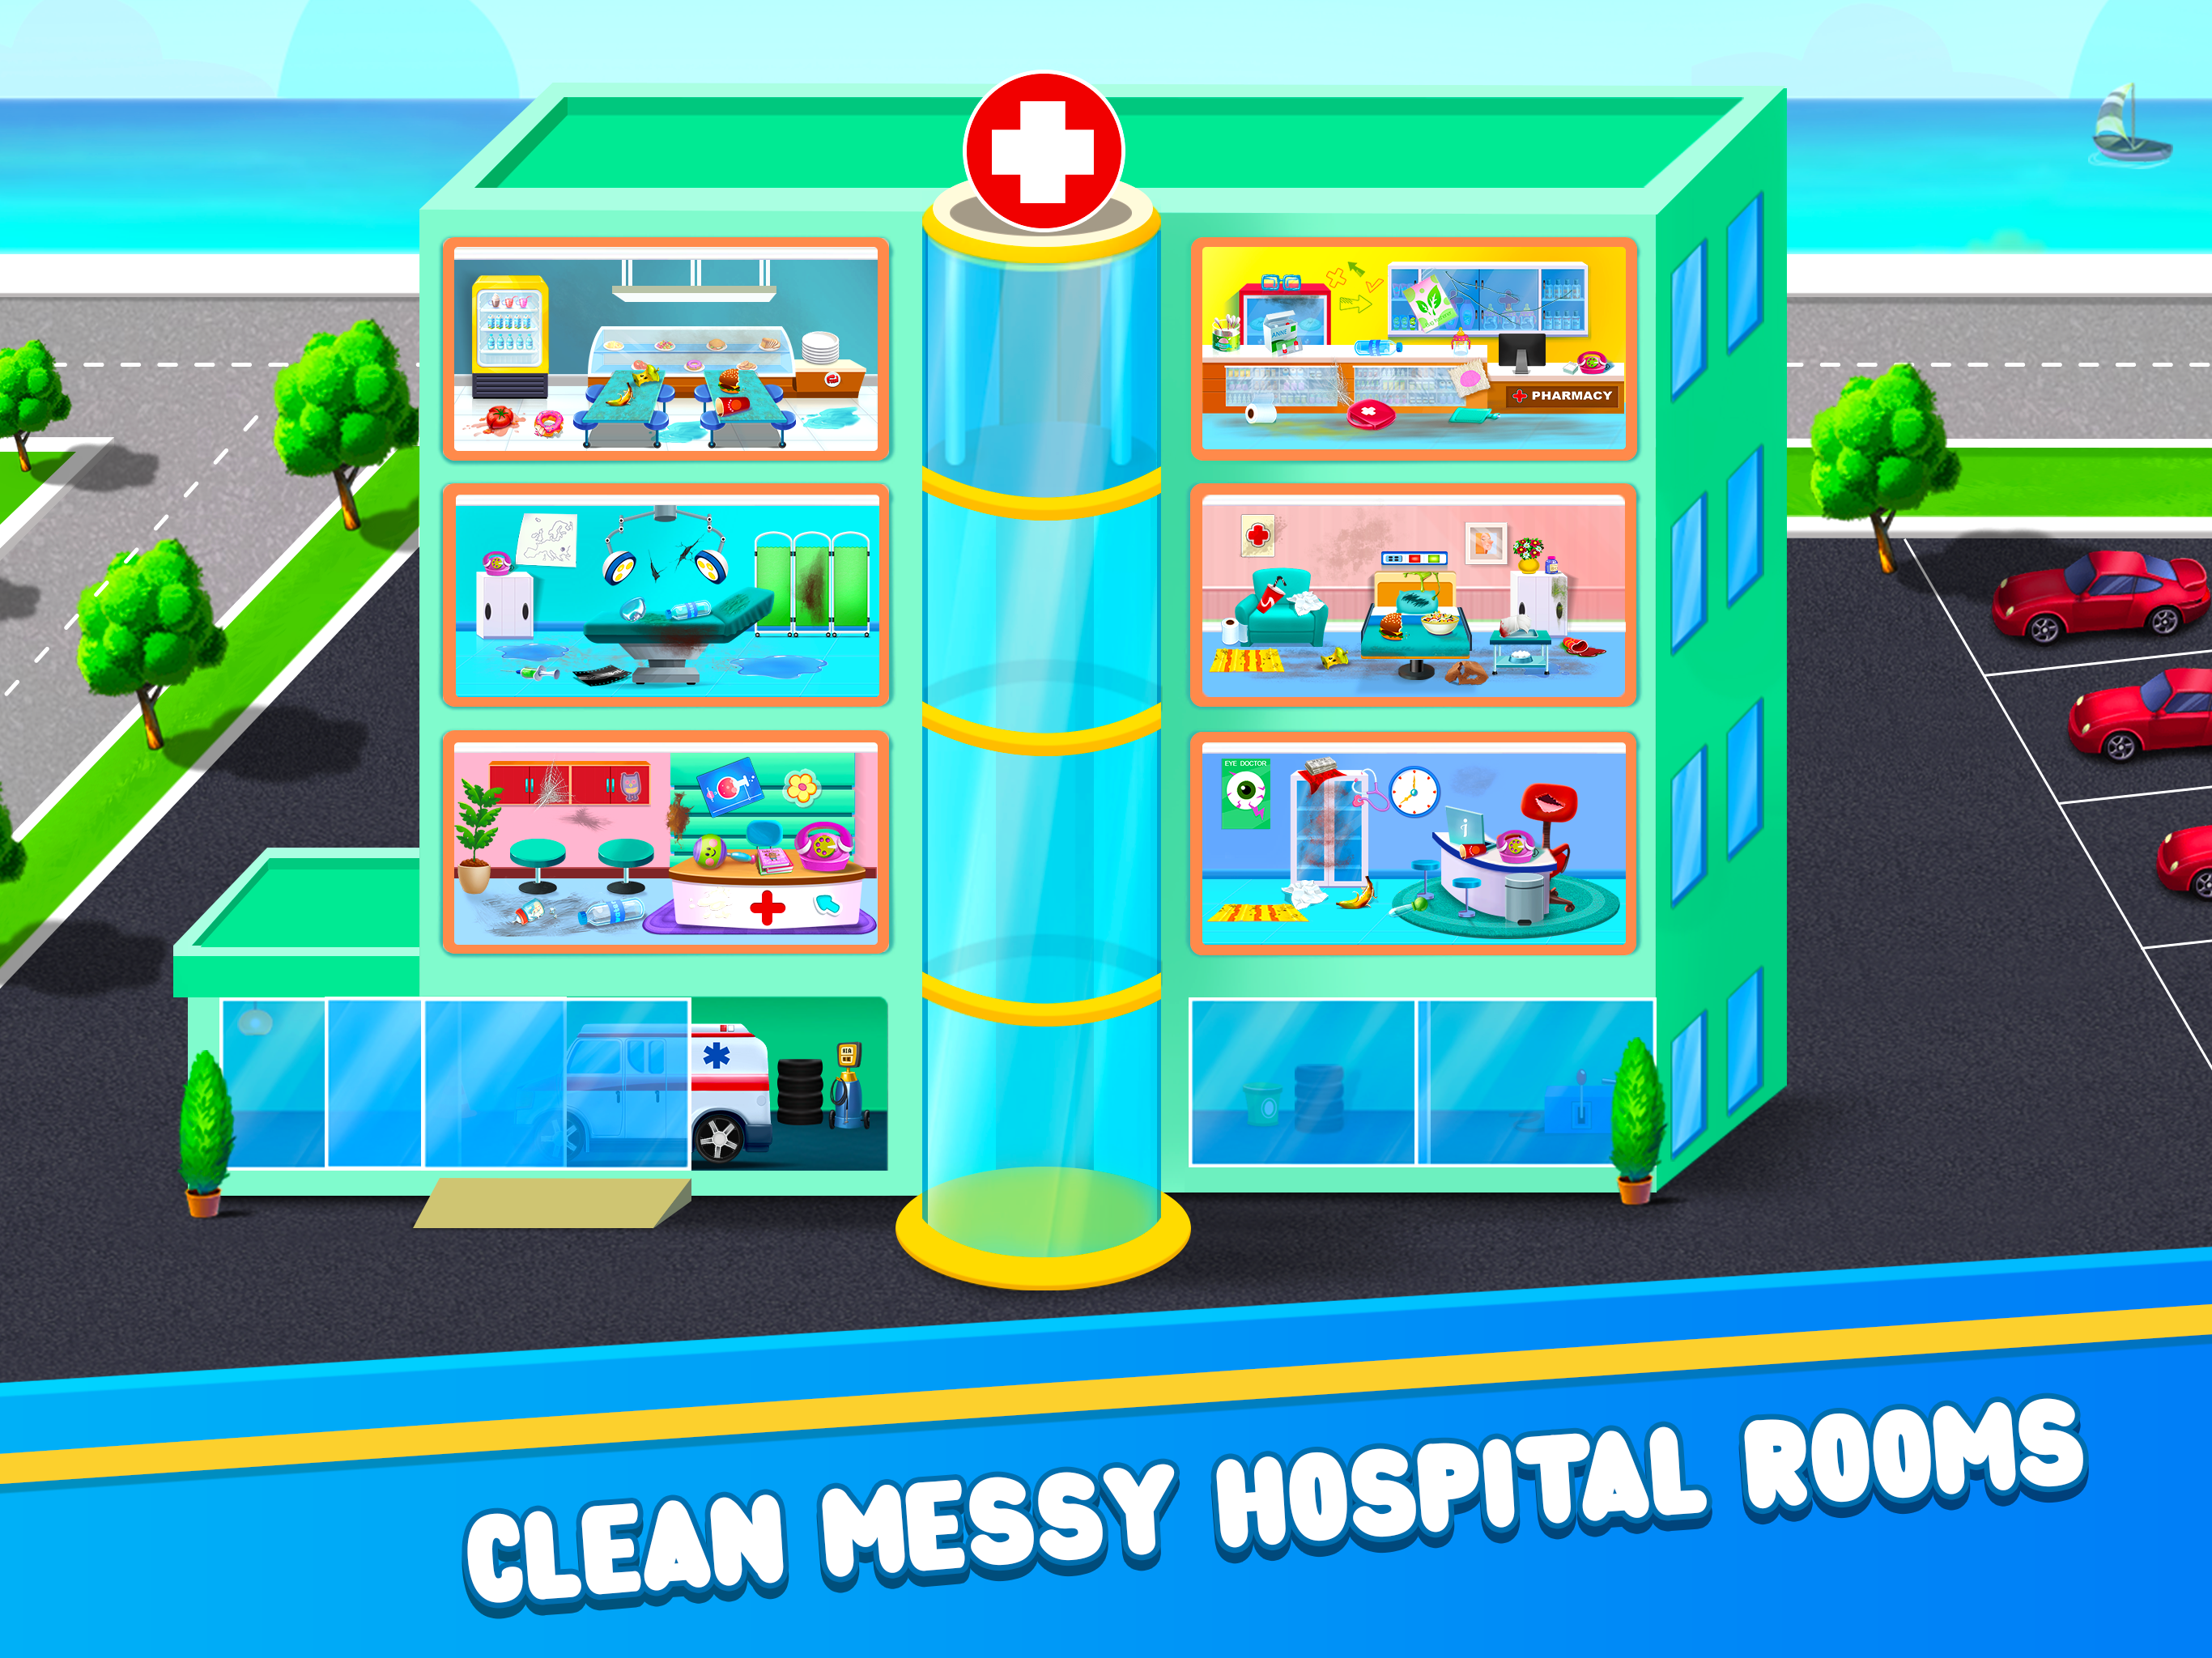 Screenshot 1 of अस्पताल की सफाई का खेल - अपने अस्पताल को साफ रखें 1.0.2